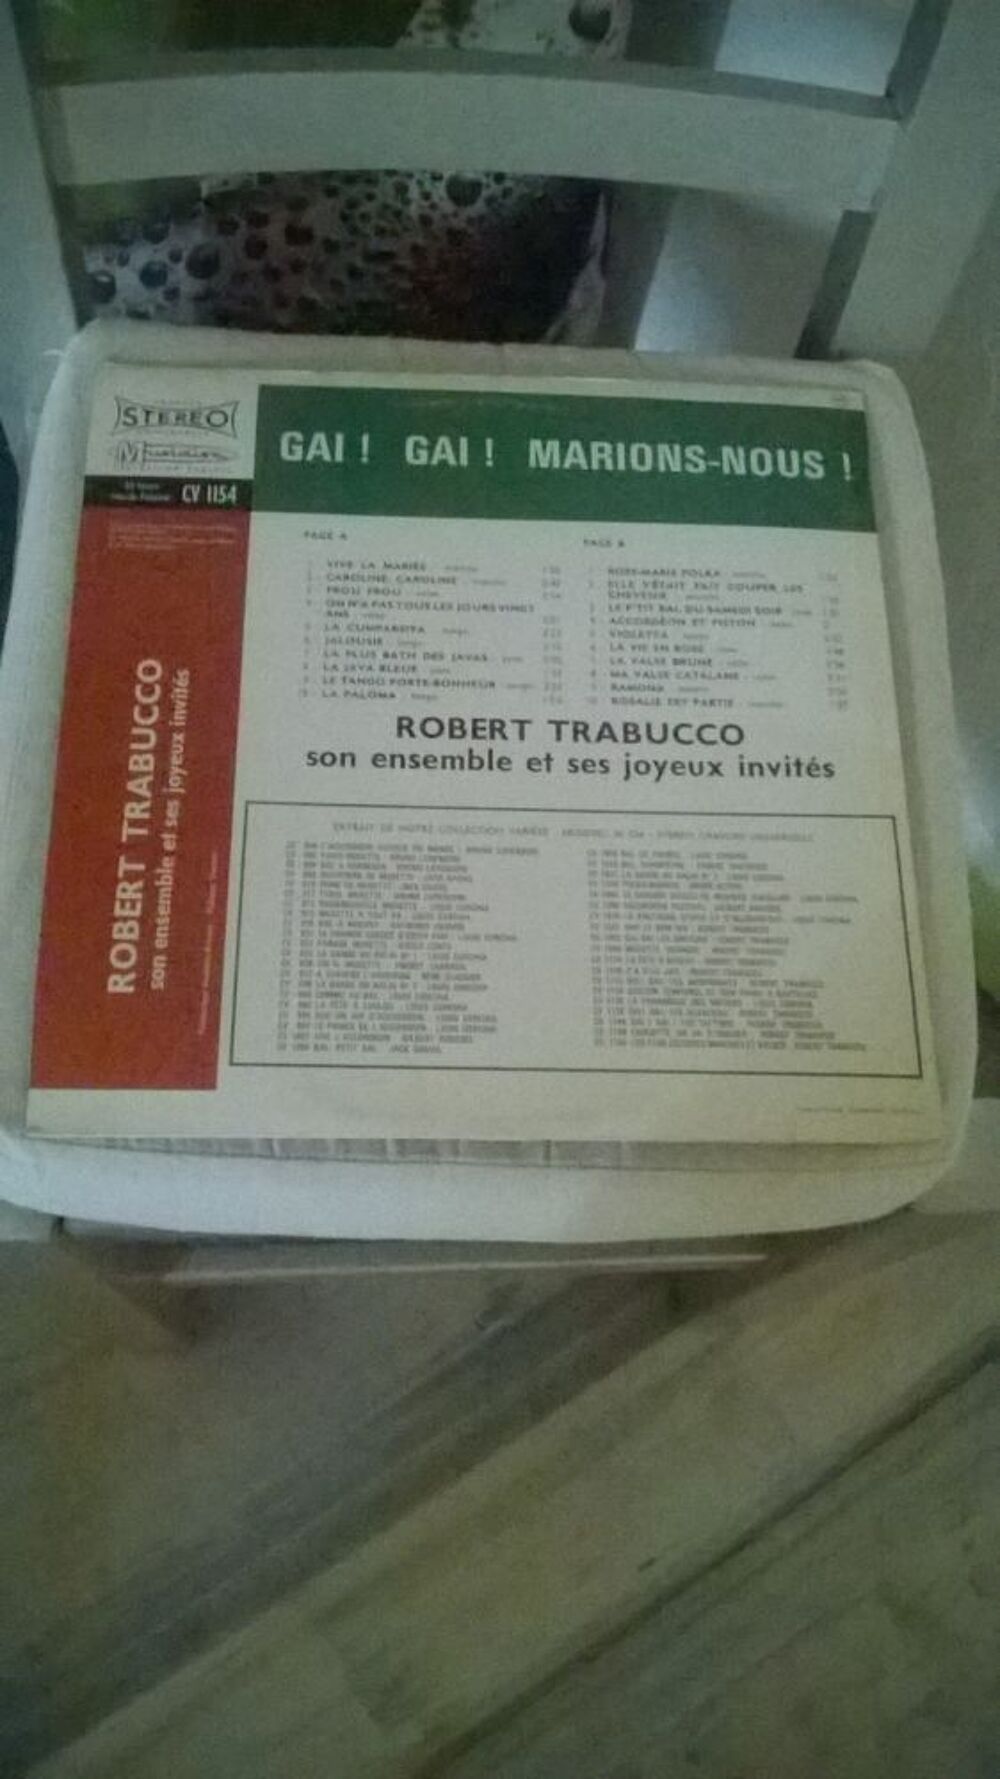 Vinyle Robert Trabucco
Gai! Gai! Marions-Nous!
Excellent e CD et vinyles